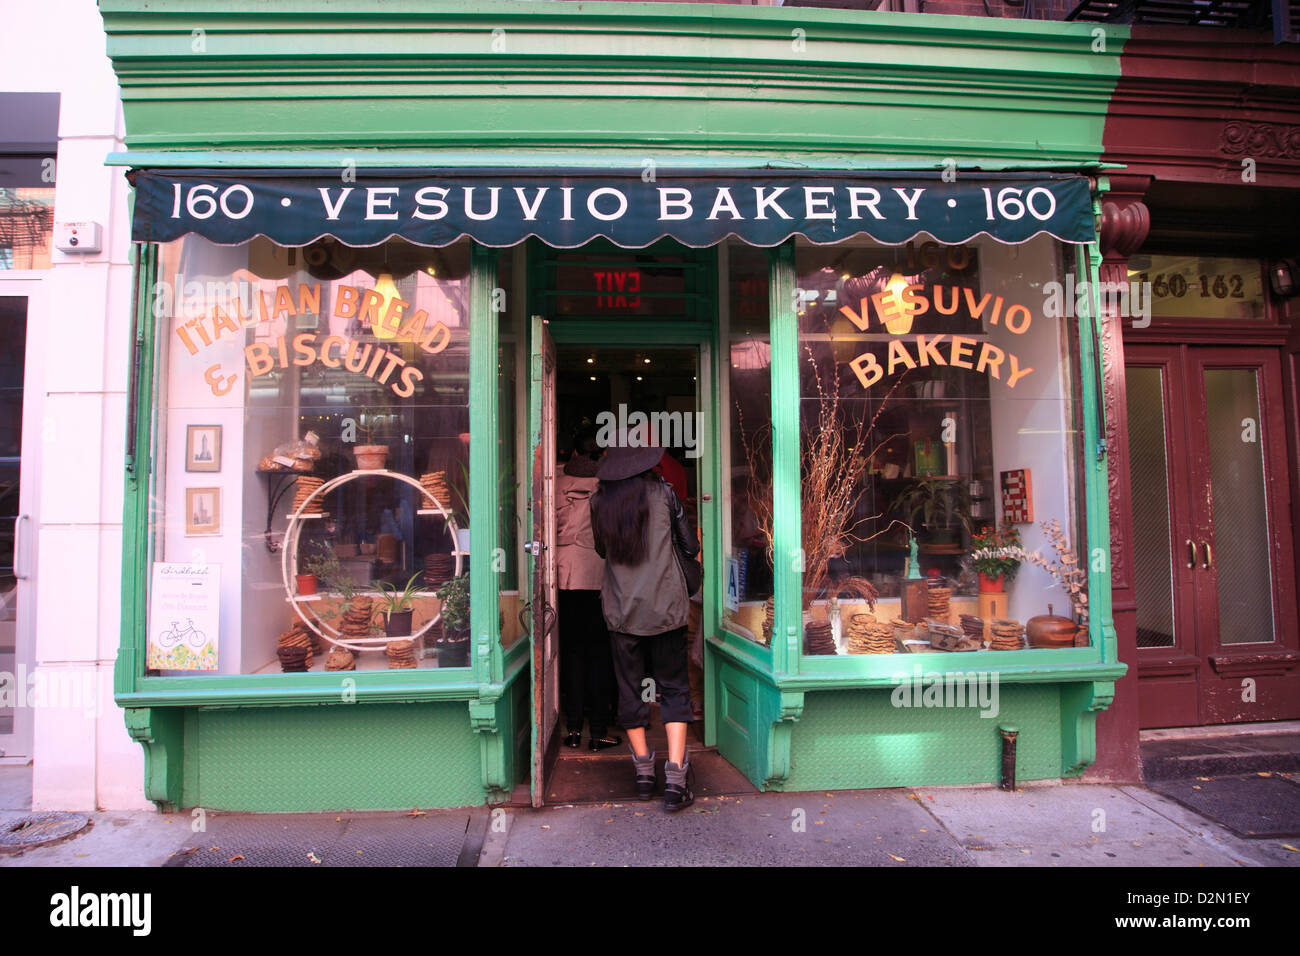 Vesuvio Bakery, Soho, Manhattan, New York City, États-Unis d'Amérique, Amérique du Nord Banque D'Images